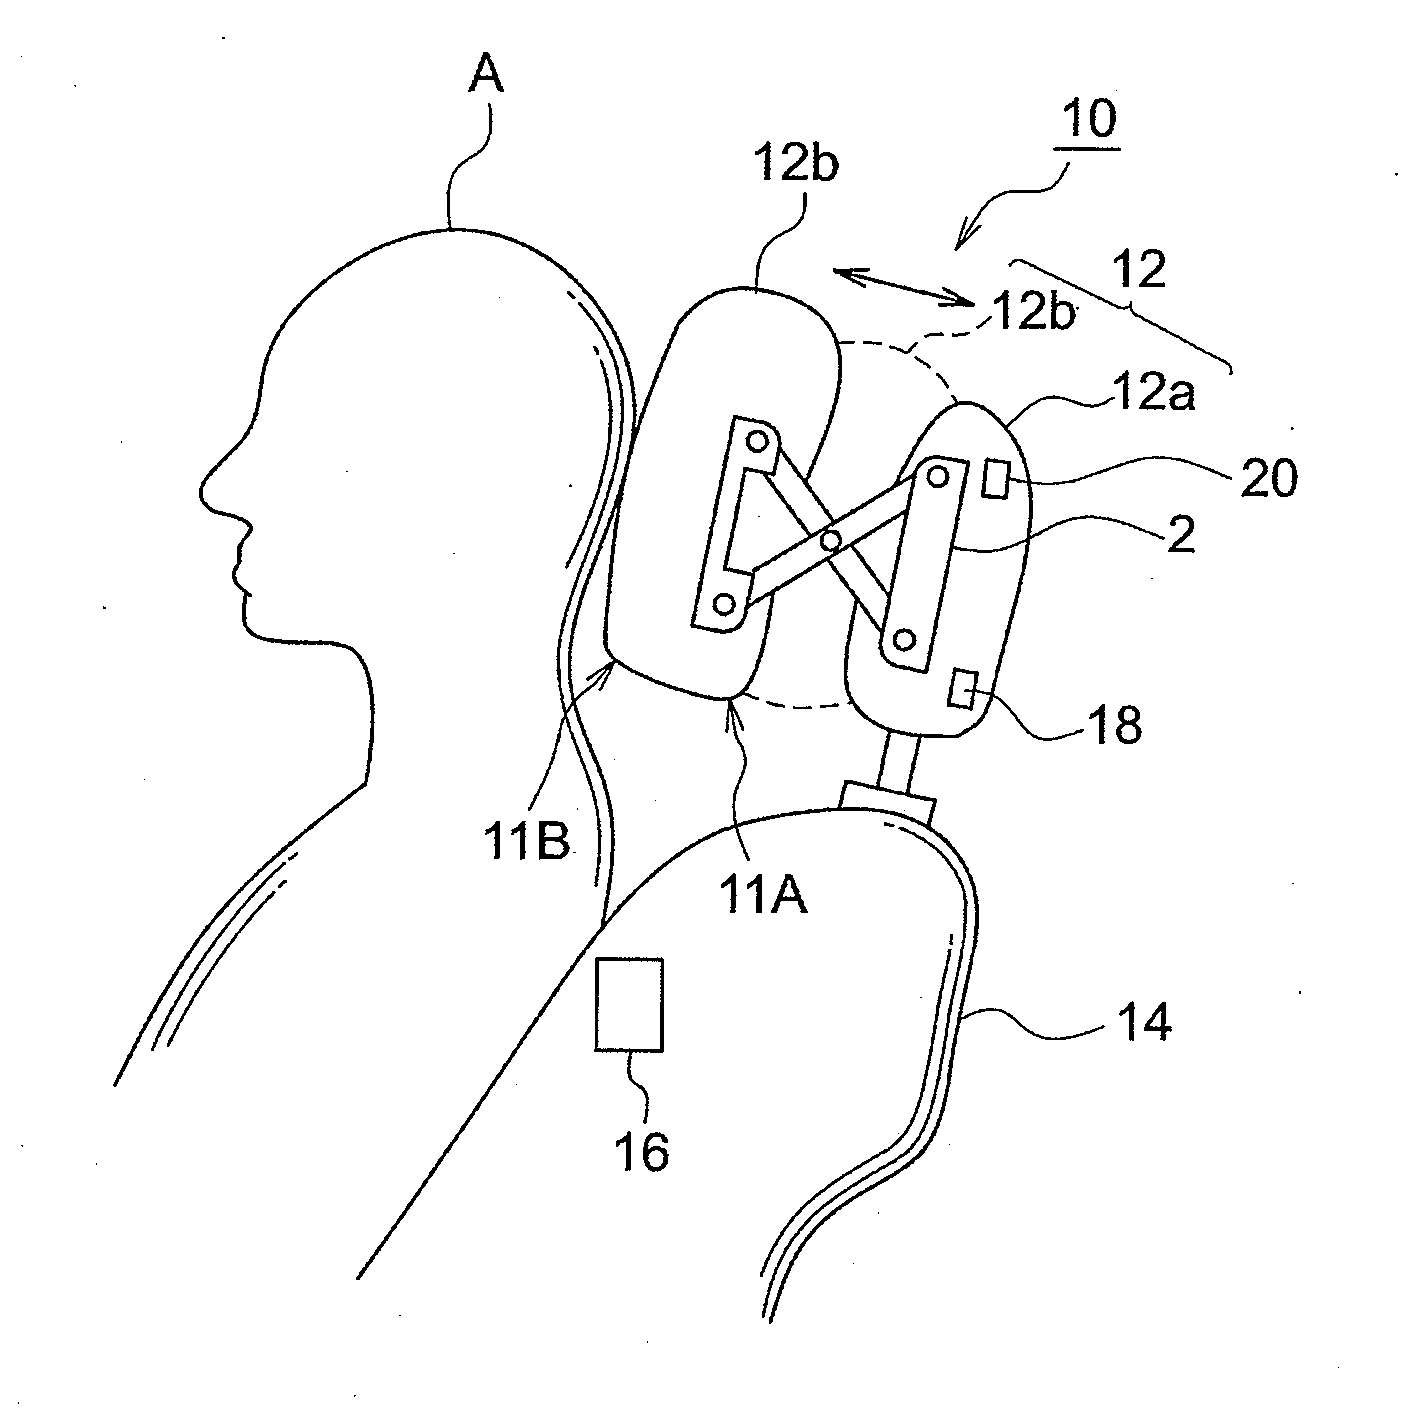 Headrest device, method of adjusting headrest positiion, and vehicle seat